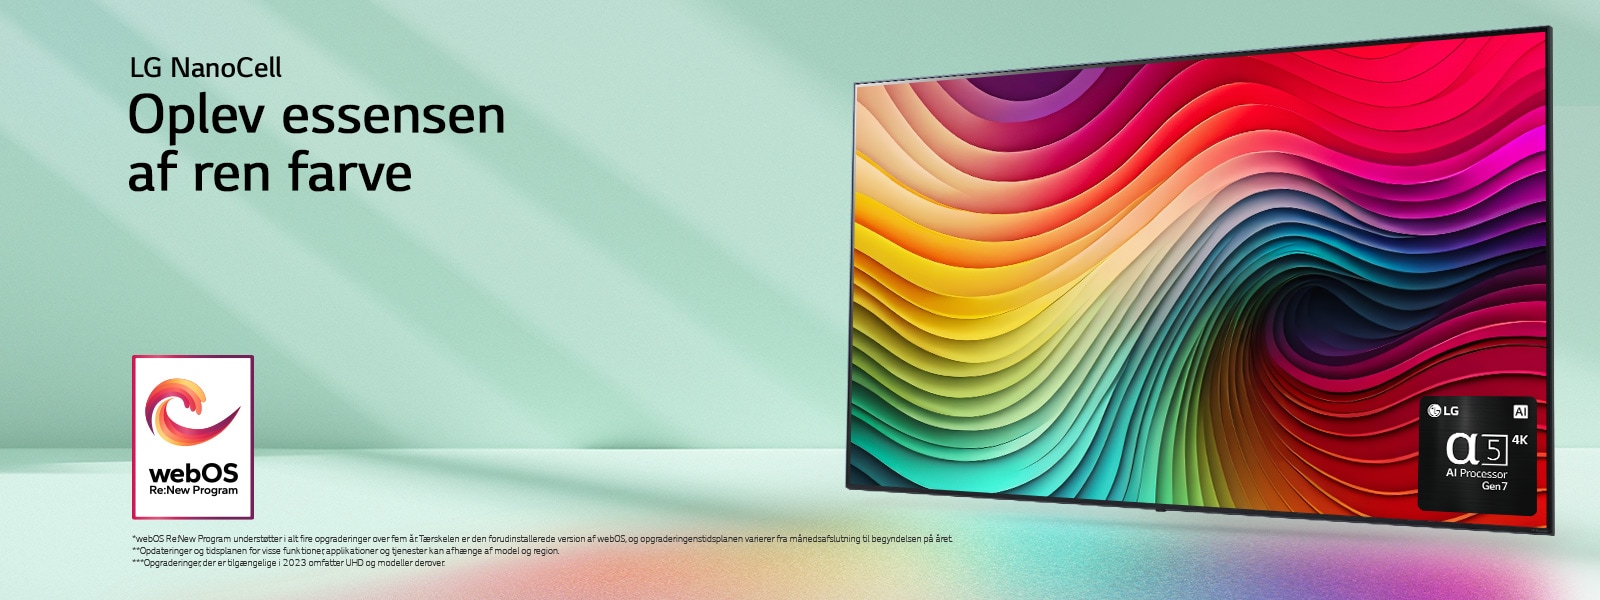 LG NanoCell TV på en mintgrøn baggrund med farvet hvirvelkunstværk og billede af alpha 5 AI Processor Gen 7 i nederste højre hjørne. Der udstråles lys, hvilket kaster farvestrålende skygger nedenunder. Logoet “webOS Re:New Program” er på billedet. En ansvarsfraskrivelse fremsætter: “webOS Re:New Program understøtter i alt fire opgraderinger over fem år. Tærskelen er den forudinstallerede version af webOS, og opgraderingenstidsplanen varierer fra månedsafslutning til begyndelse på året.” “Opdateringer og tidsplanen for visse funktioner, applikationer og tjenester kan afhænge af model og region.”  “Opgraderinger, der er tilgængelige i 2023 omfatter UHD og modeller derover.”